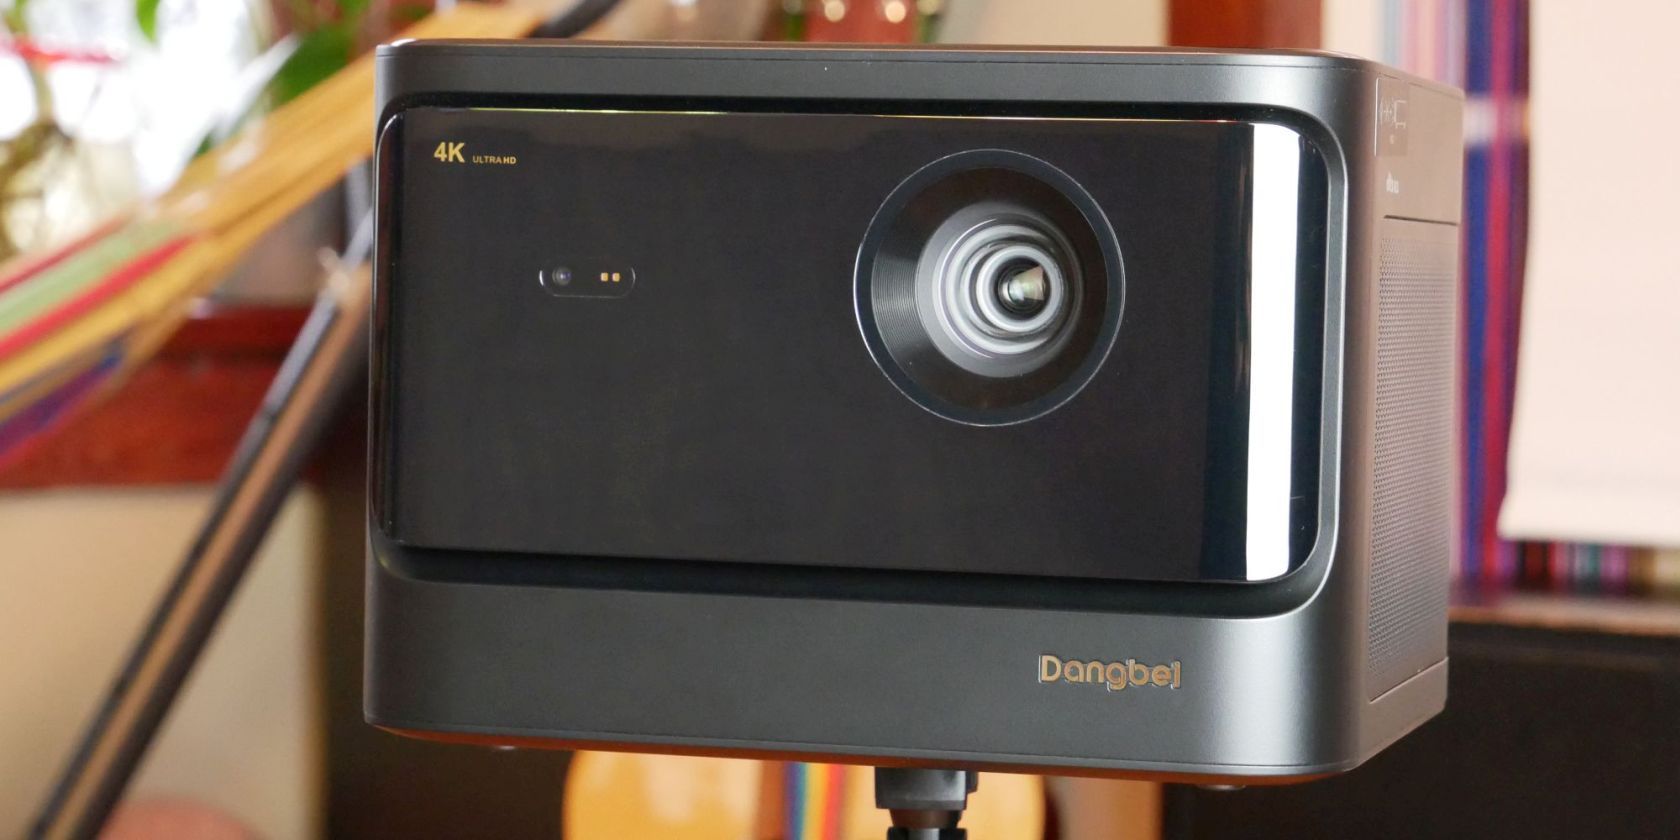 Revisión de Dangbei Mars Pro: calidad de video, audio y precio - GizChina.it